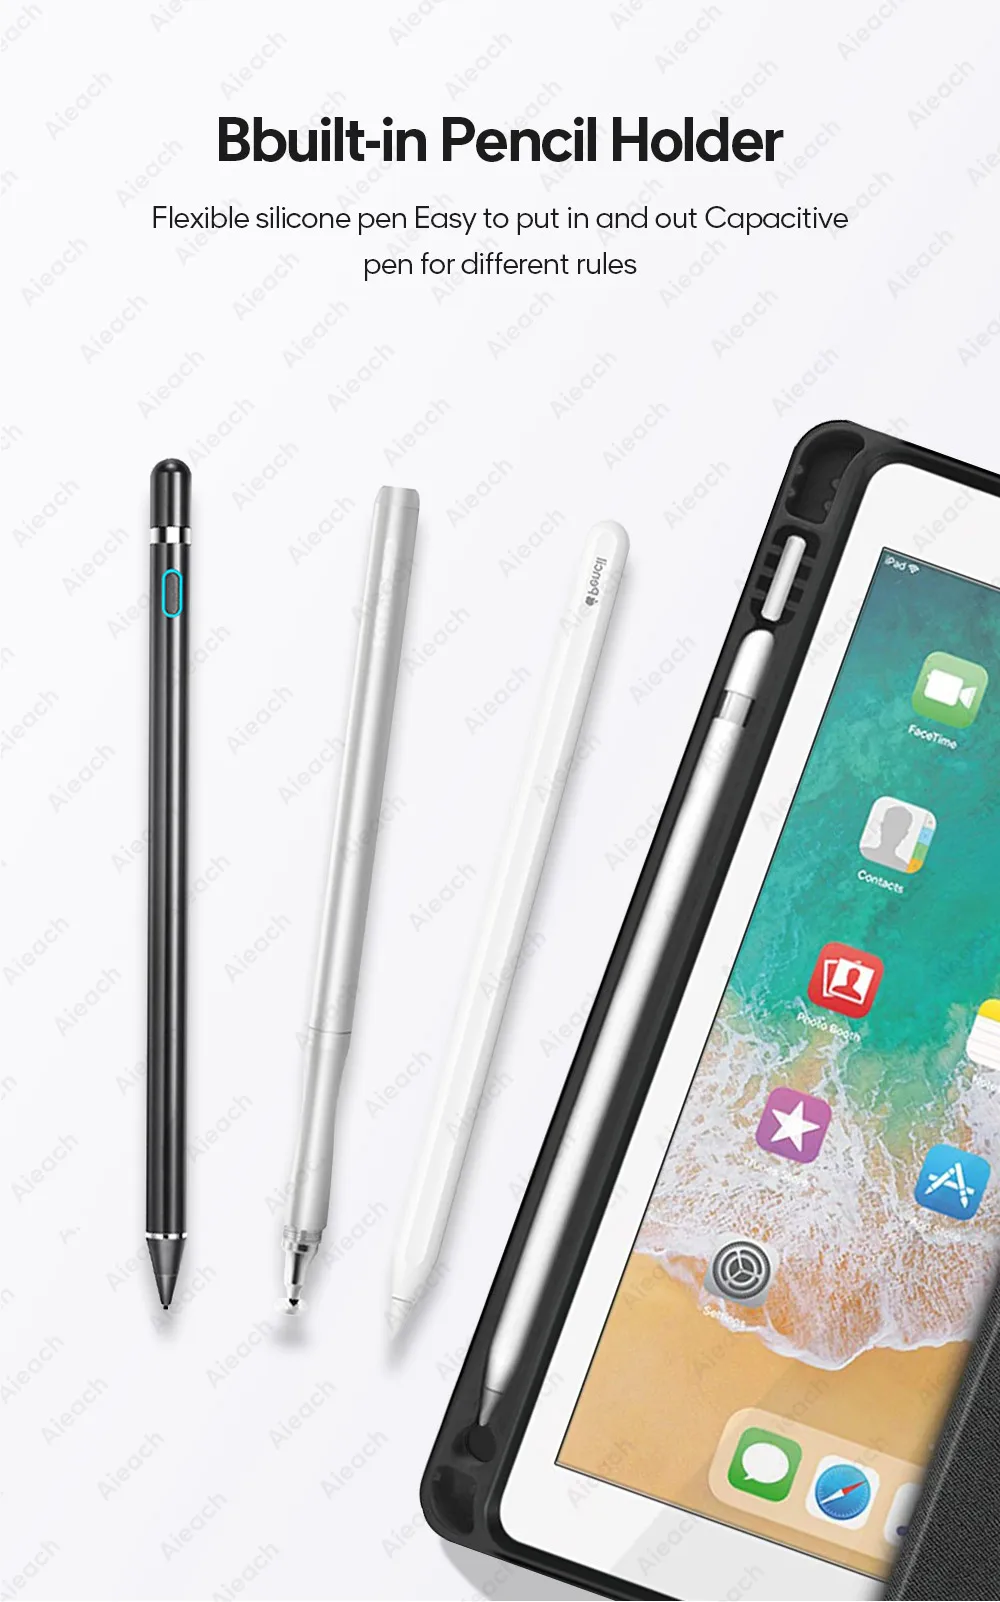 Чехол для нового iPad 9,7 дюймов 2018 2017 чехол с карандашом Держатель смарт-из искусственной кожи ткань текстура мягкий силиконовый чехол для iPad